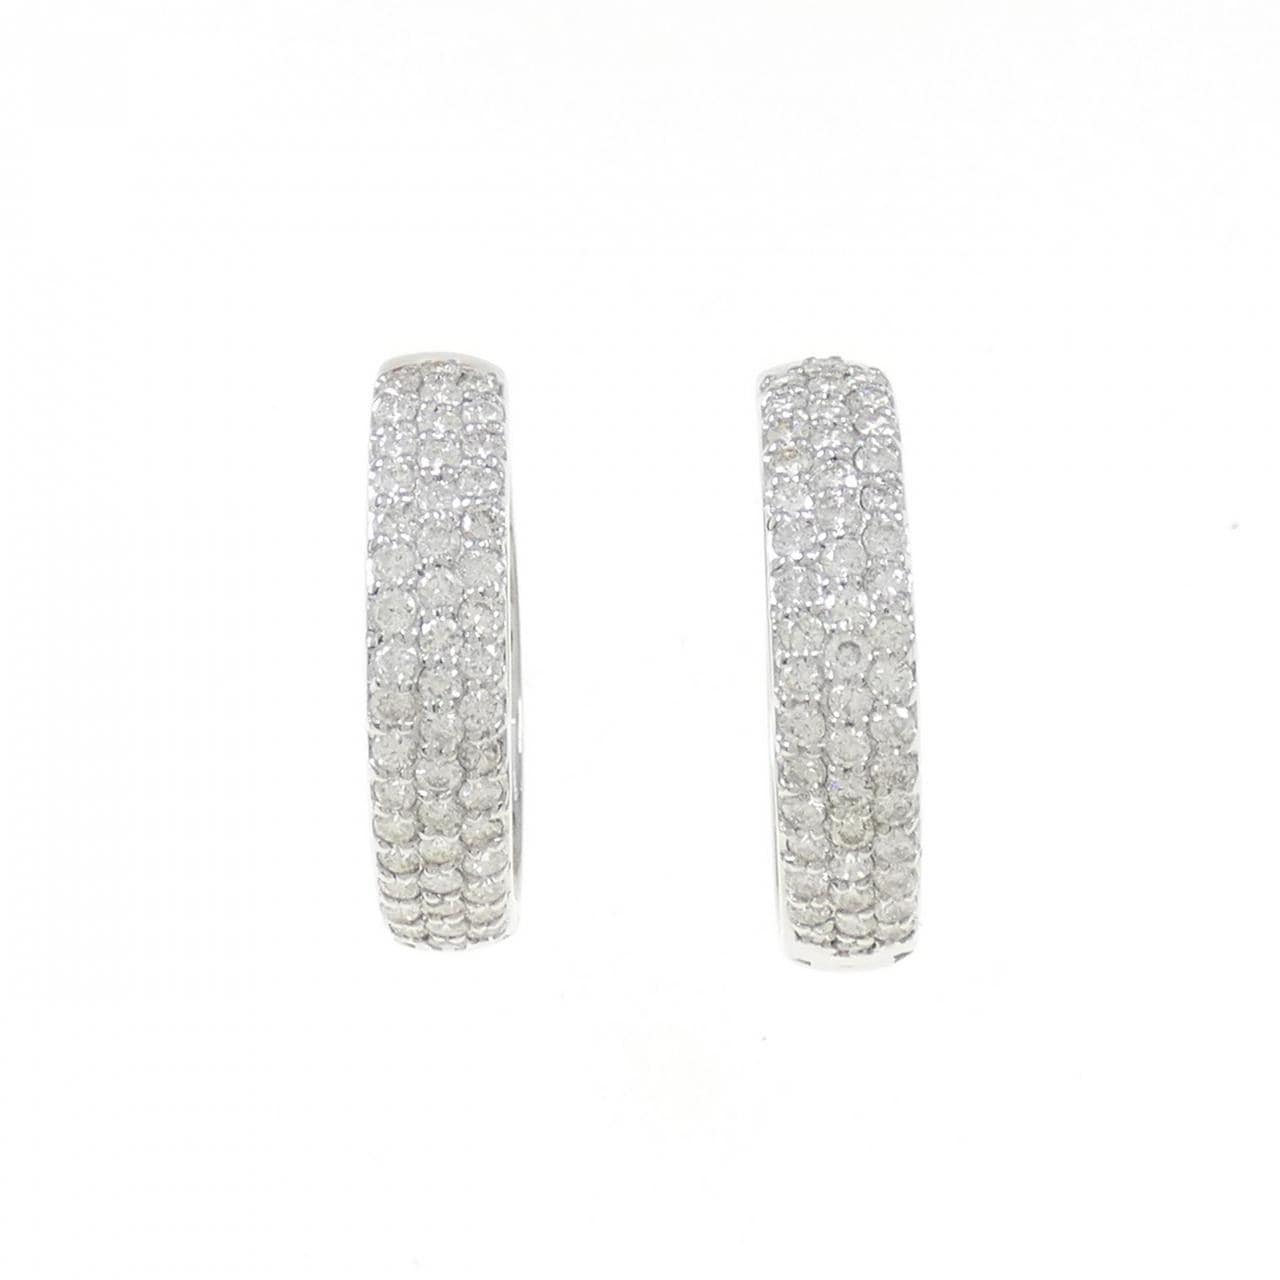 K18WG pave Diamond earrings 1.50CT